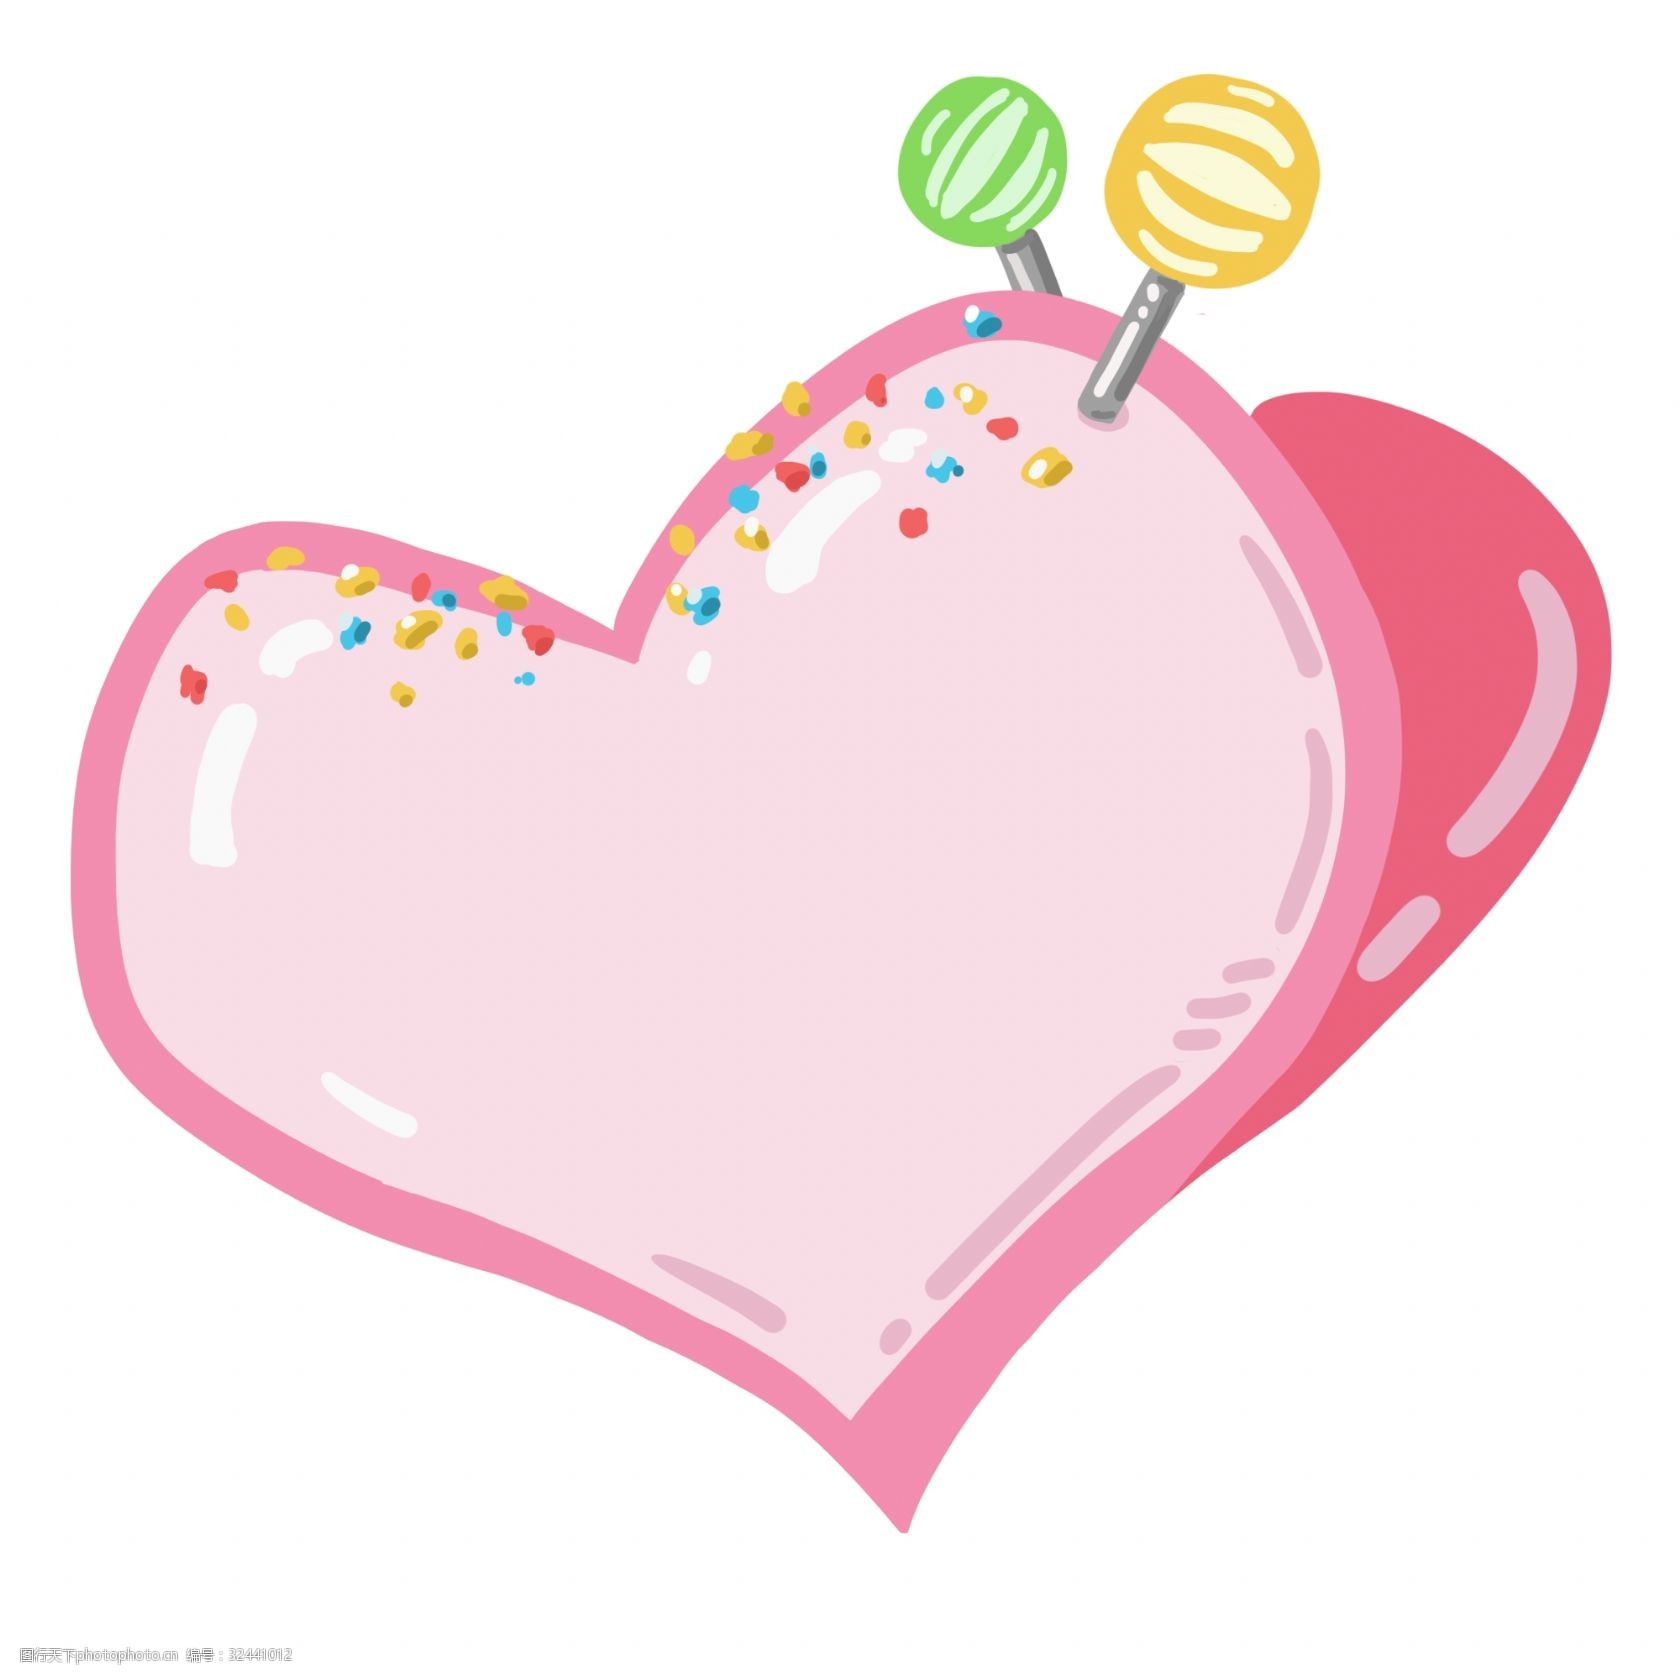 棒棒糖边框 粉色爱心边框 彩色棒棒糖插画 粉色爱心装饰 可爱边框